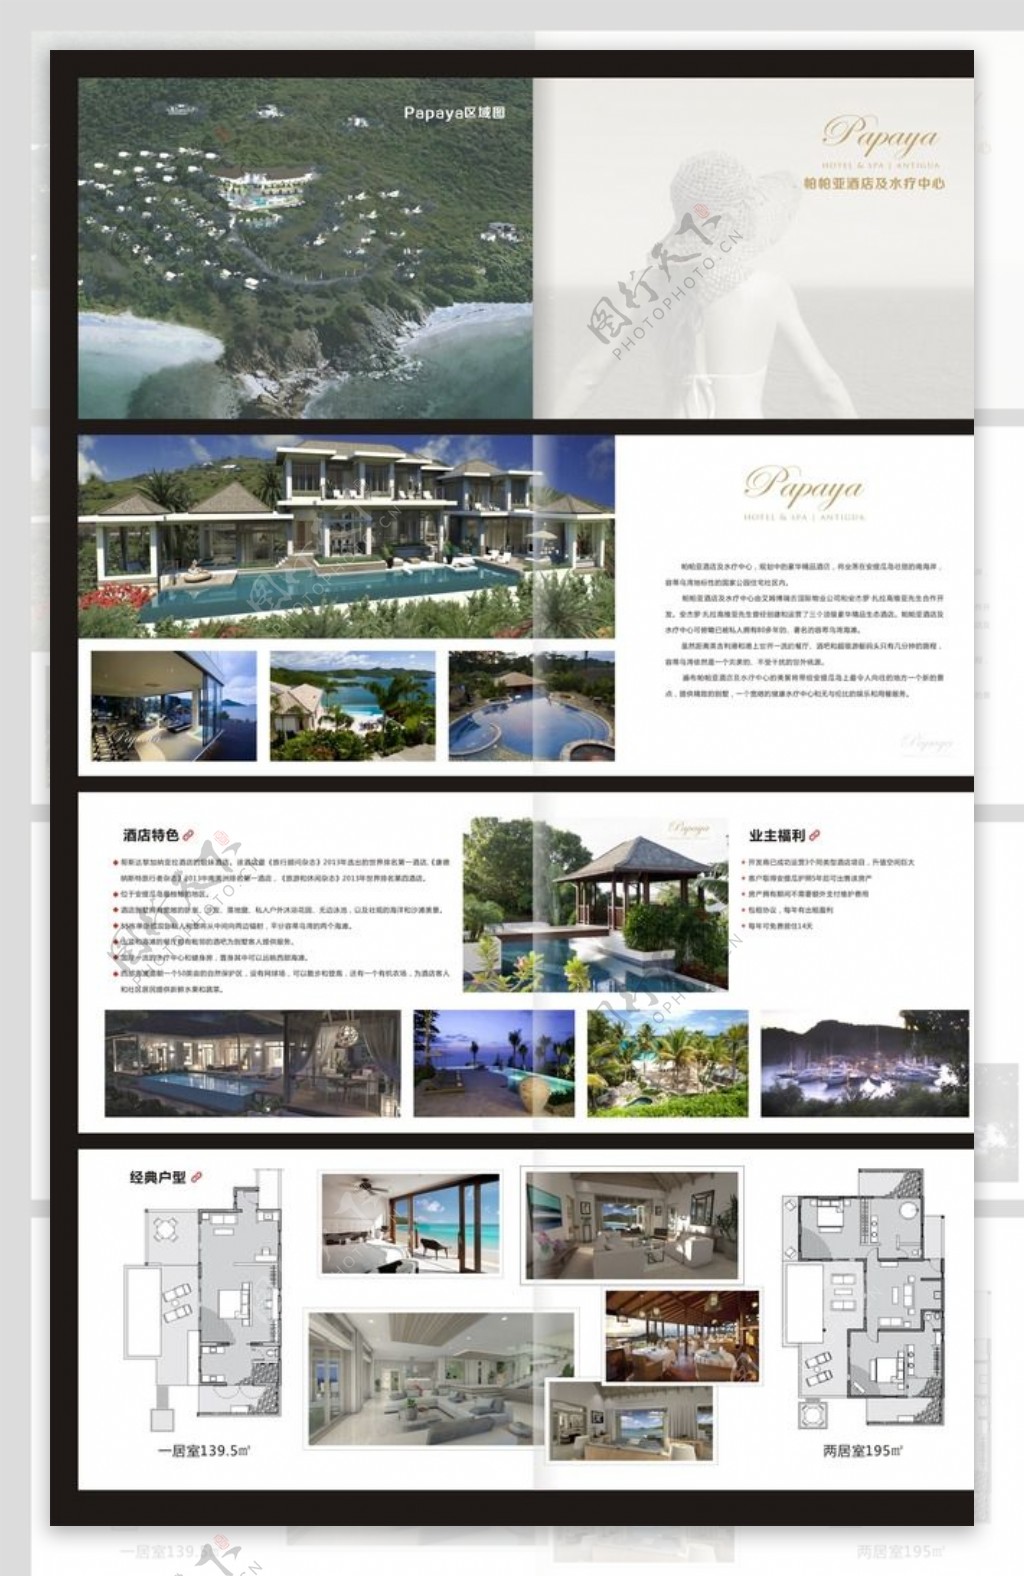 papaya酒店册子图片